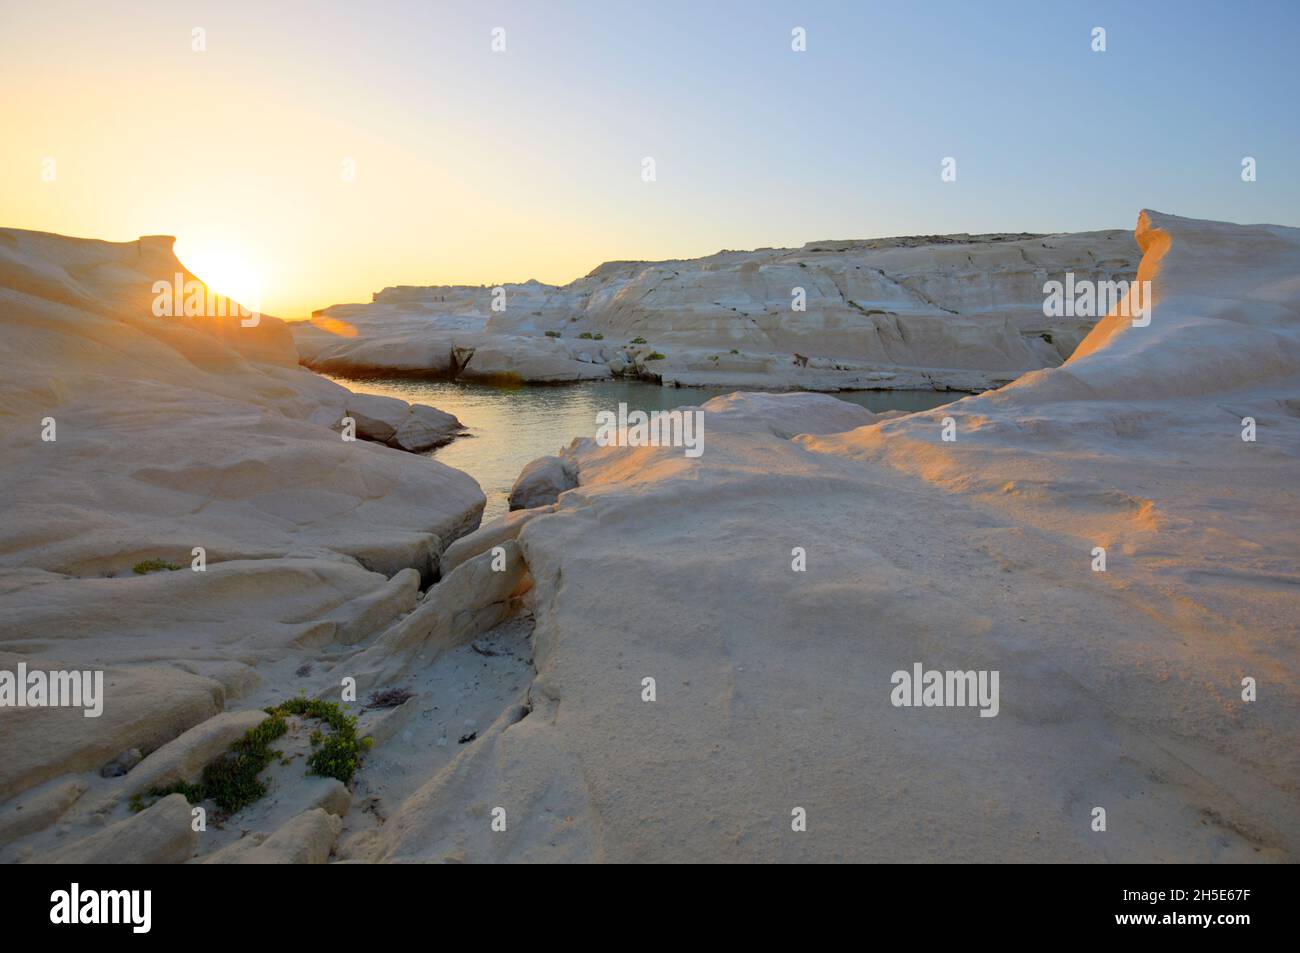 The white cliffs of Sarakiniko Beach at sunrise, Milos, Greece Stock Photo